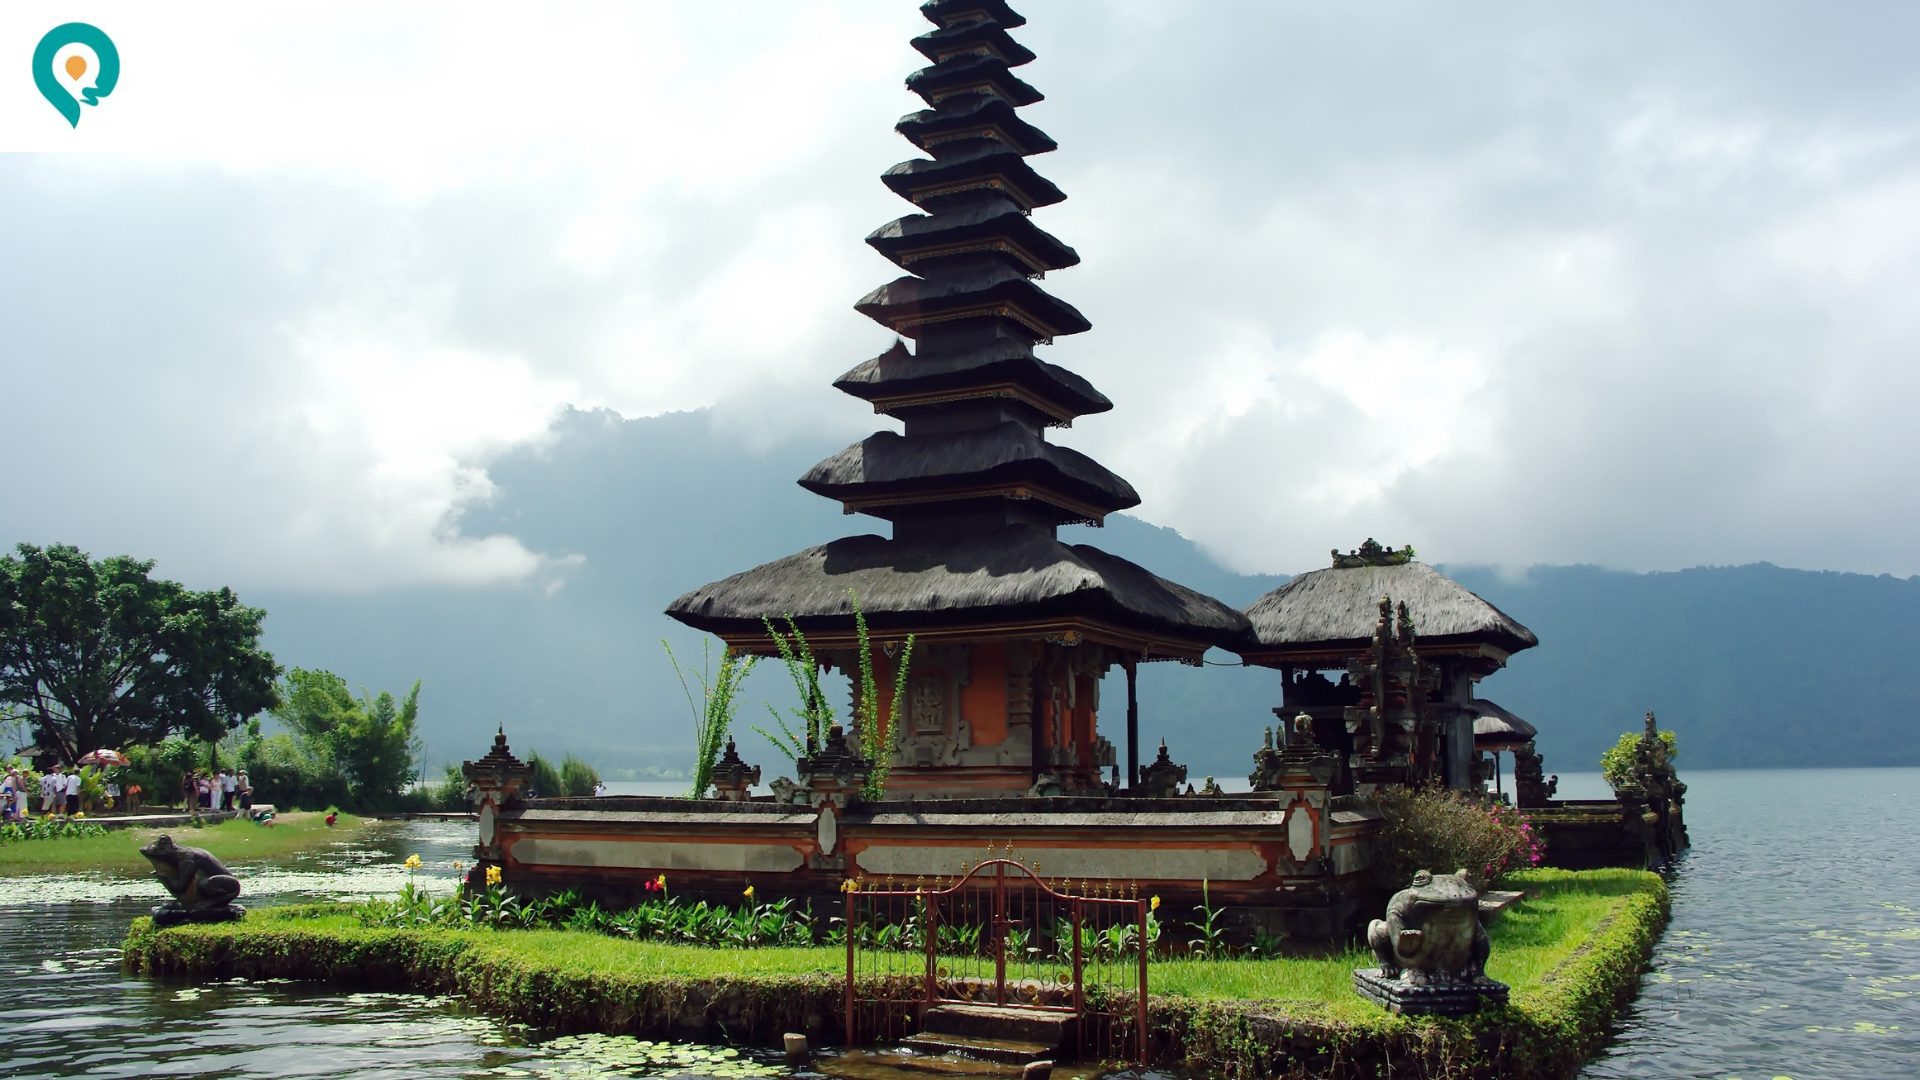 Tips Liburan Ke Bali